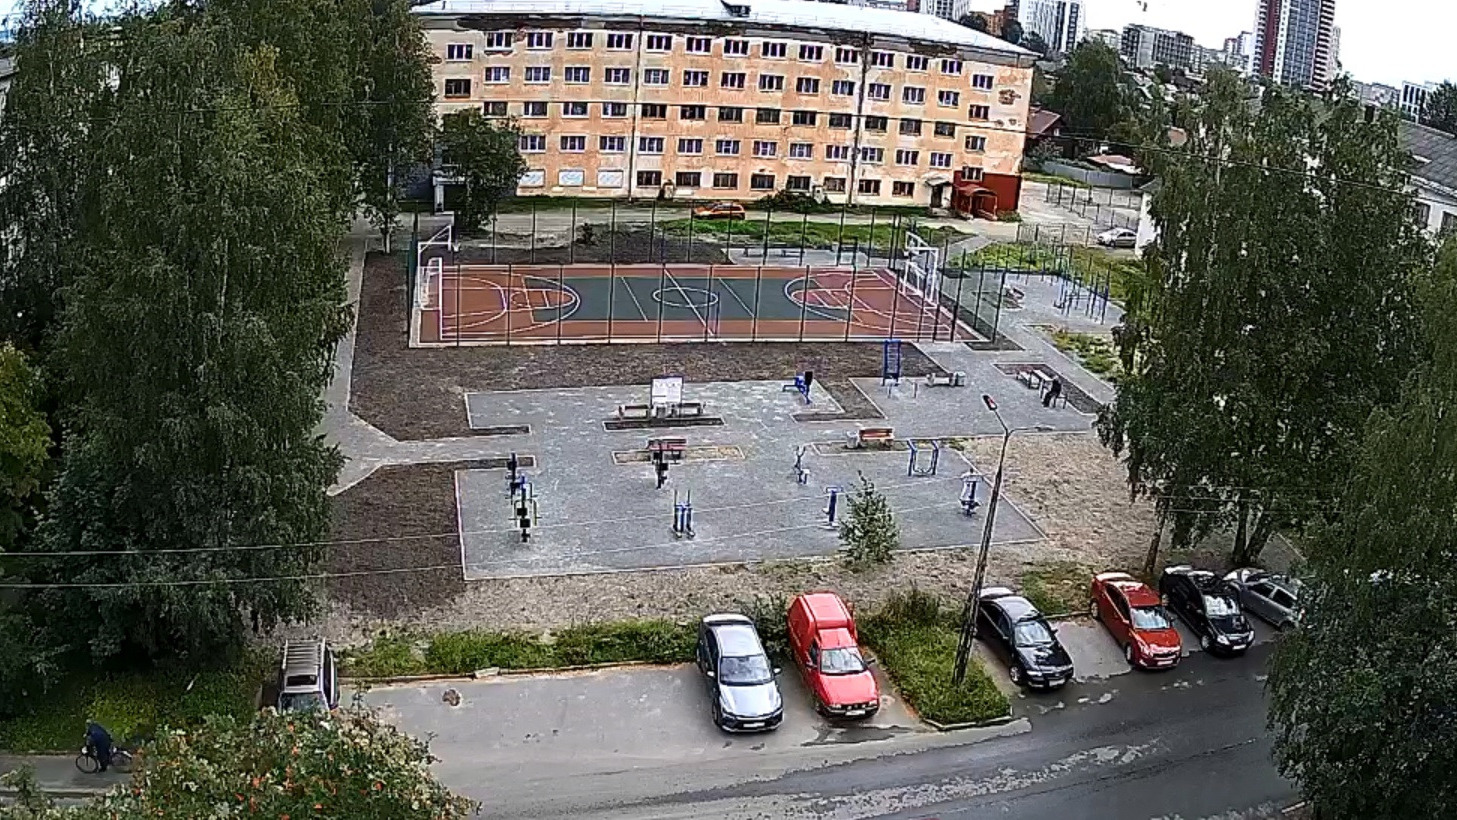 Универсальная спортивная площадка появилась в микрорайоне Петрозаводска